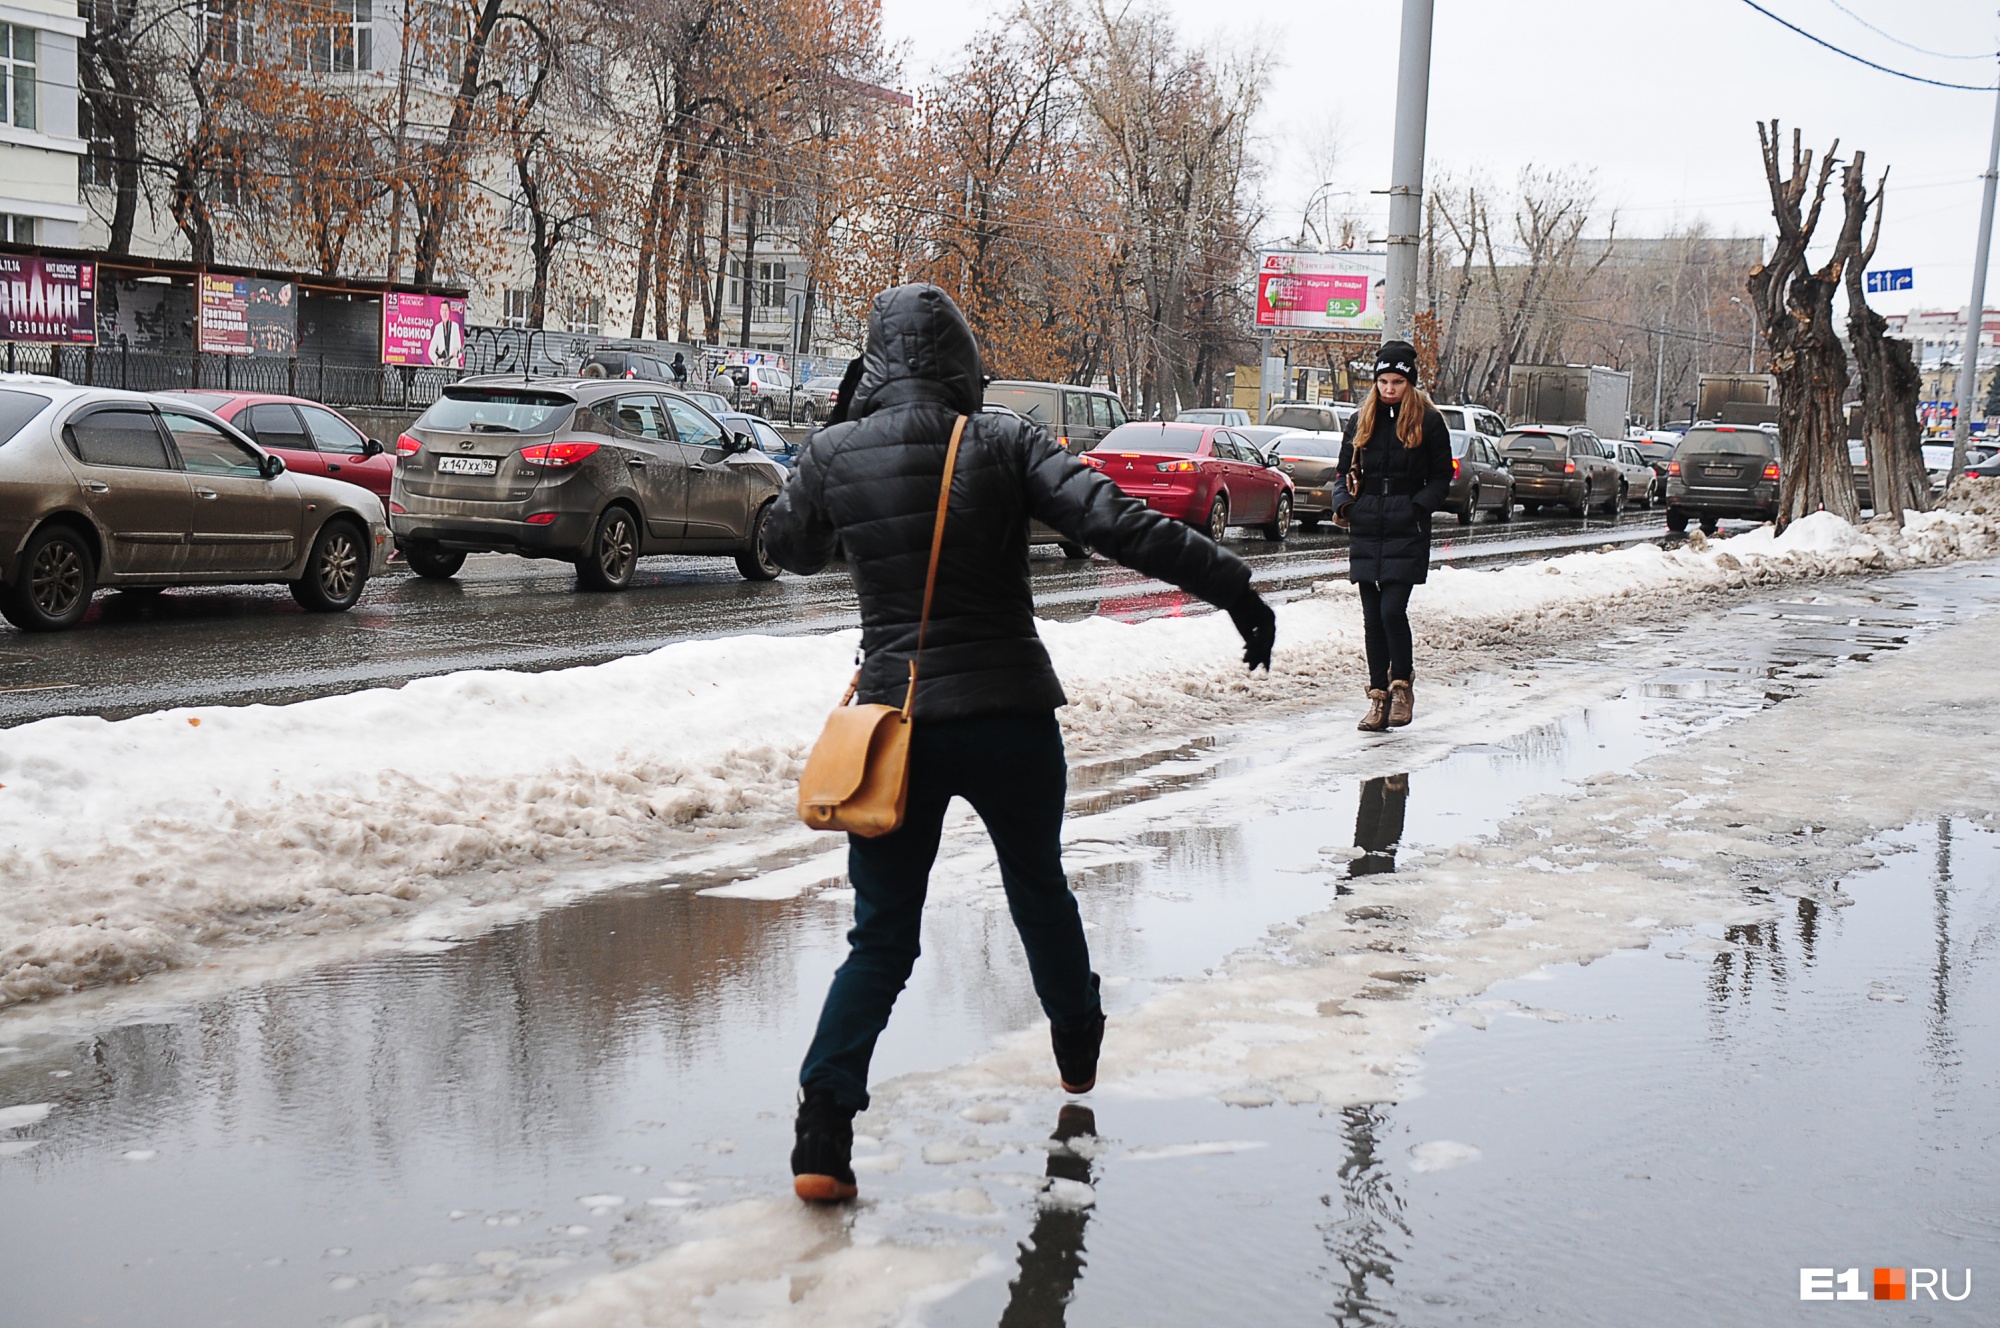 Готовьте резиновые сапоги: в воскресенье по улицам Екатеринбурга потекут реки